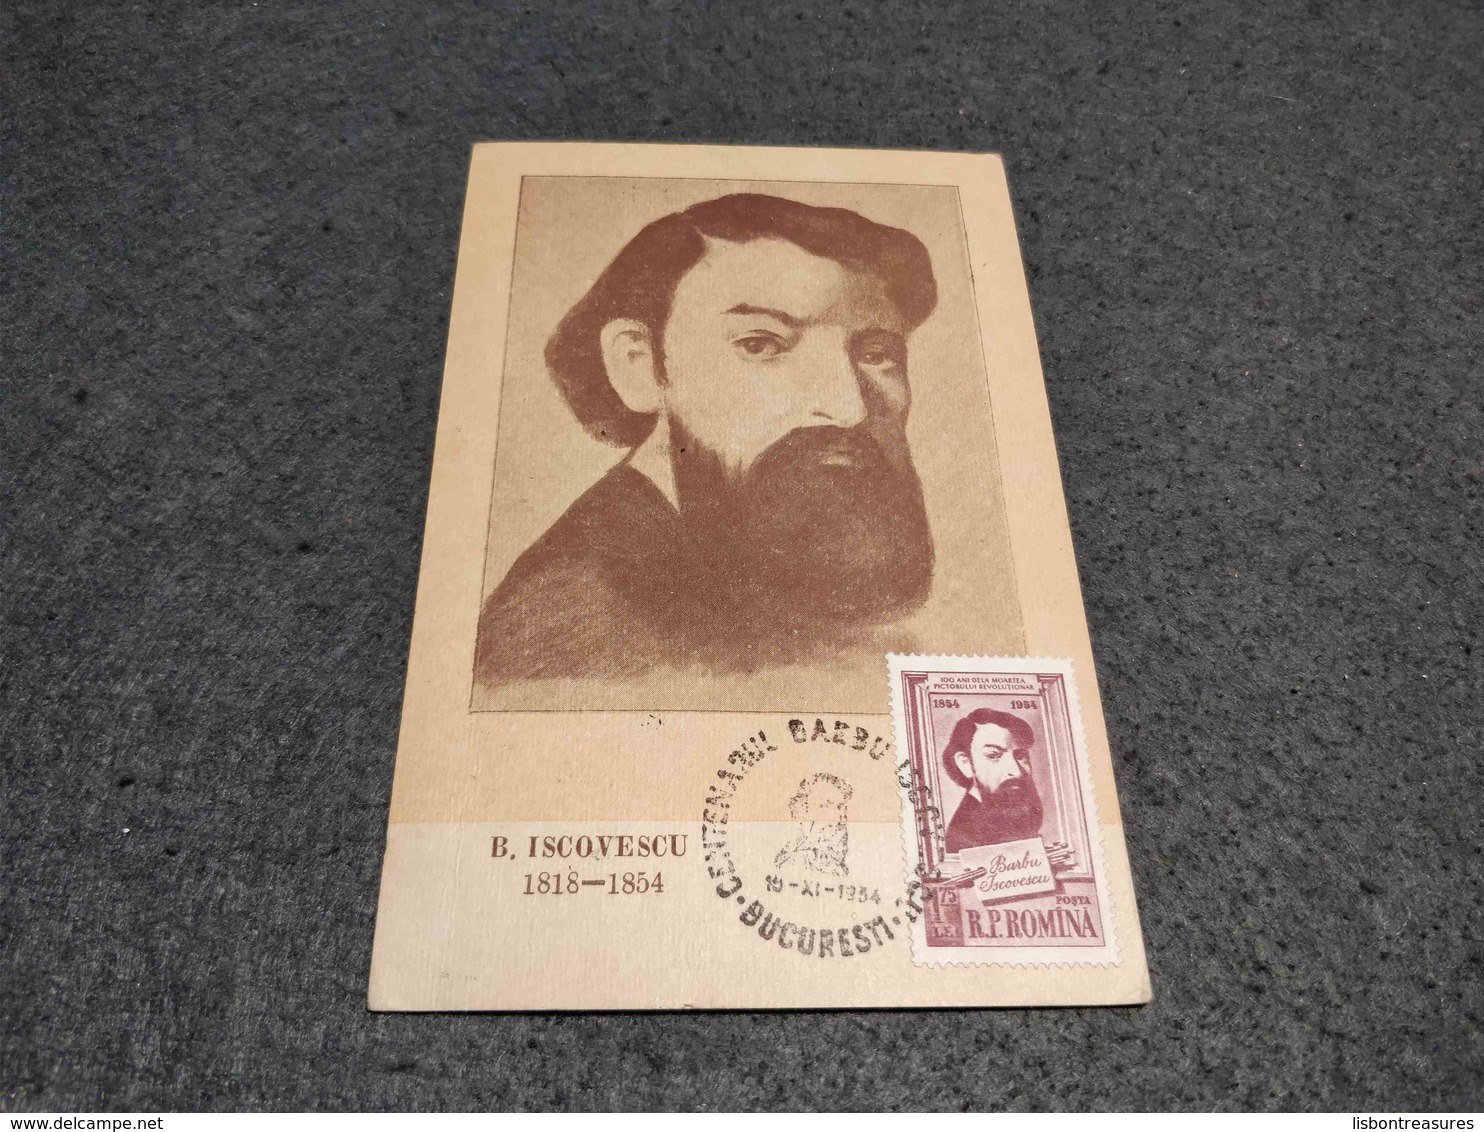 RARE ROMANIA MAXIMUM CARD B. ISCOVESCU  ART PAINTING 1954 CIRCULATED W/ VIGNETTE UNIVERSAL EXPOSITION 1958 TOP - Cartes-maximum (CM)